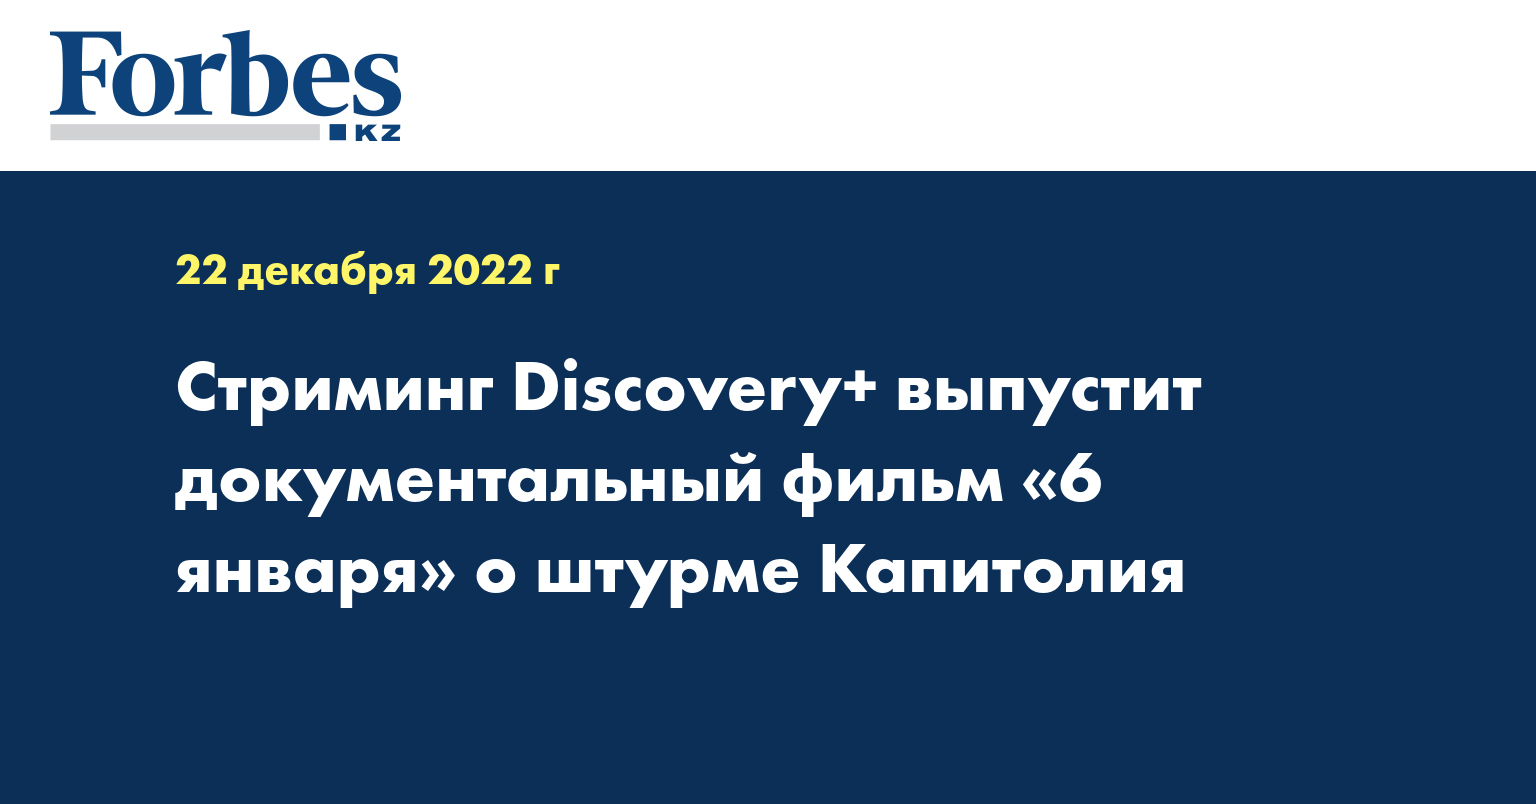 Стриминг Discovery+ выпустит документальный фильм «6 января» о штурме Капитолия